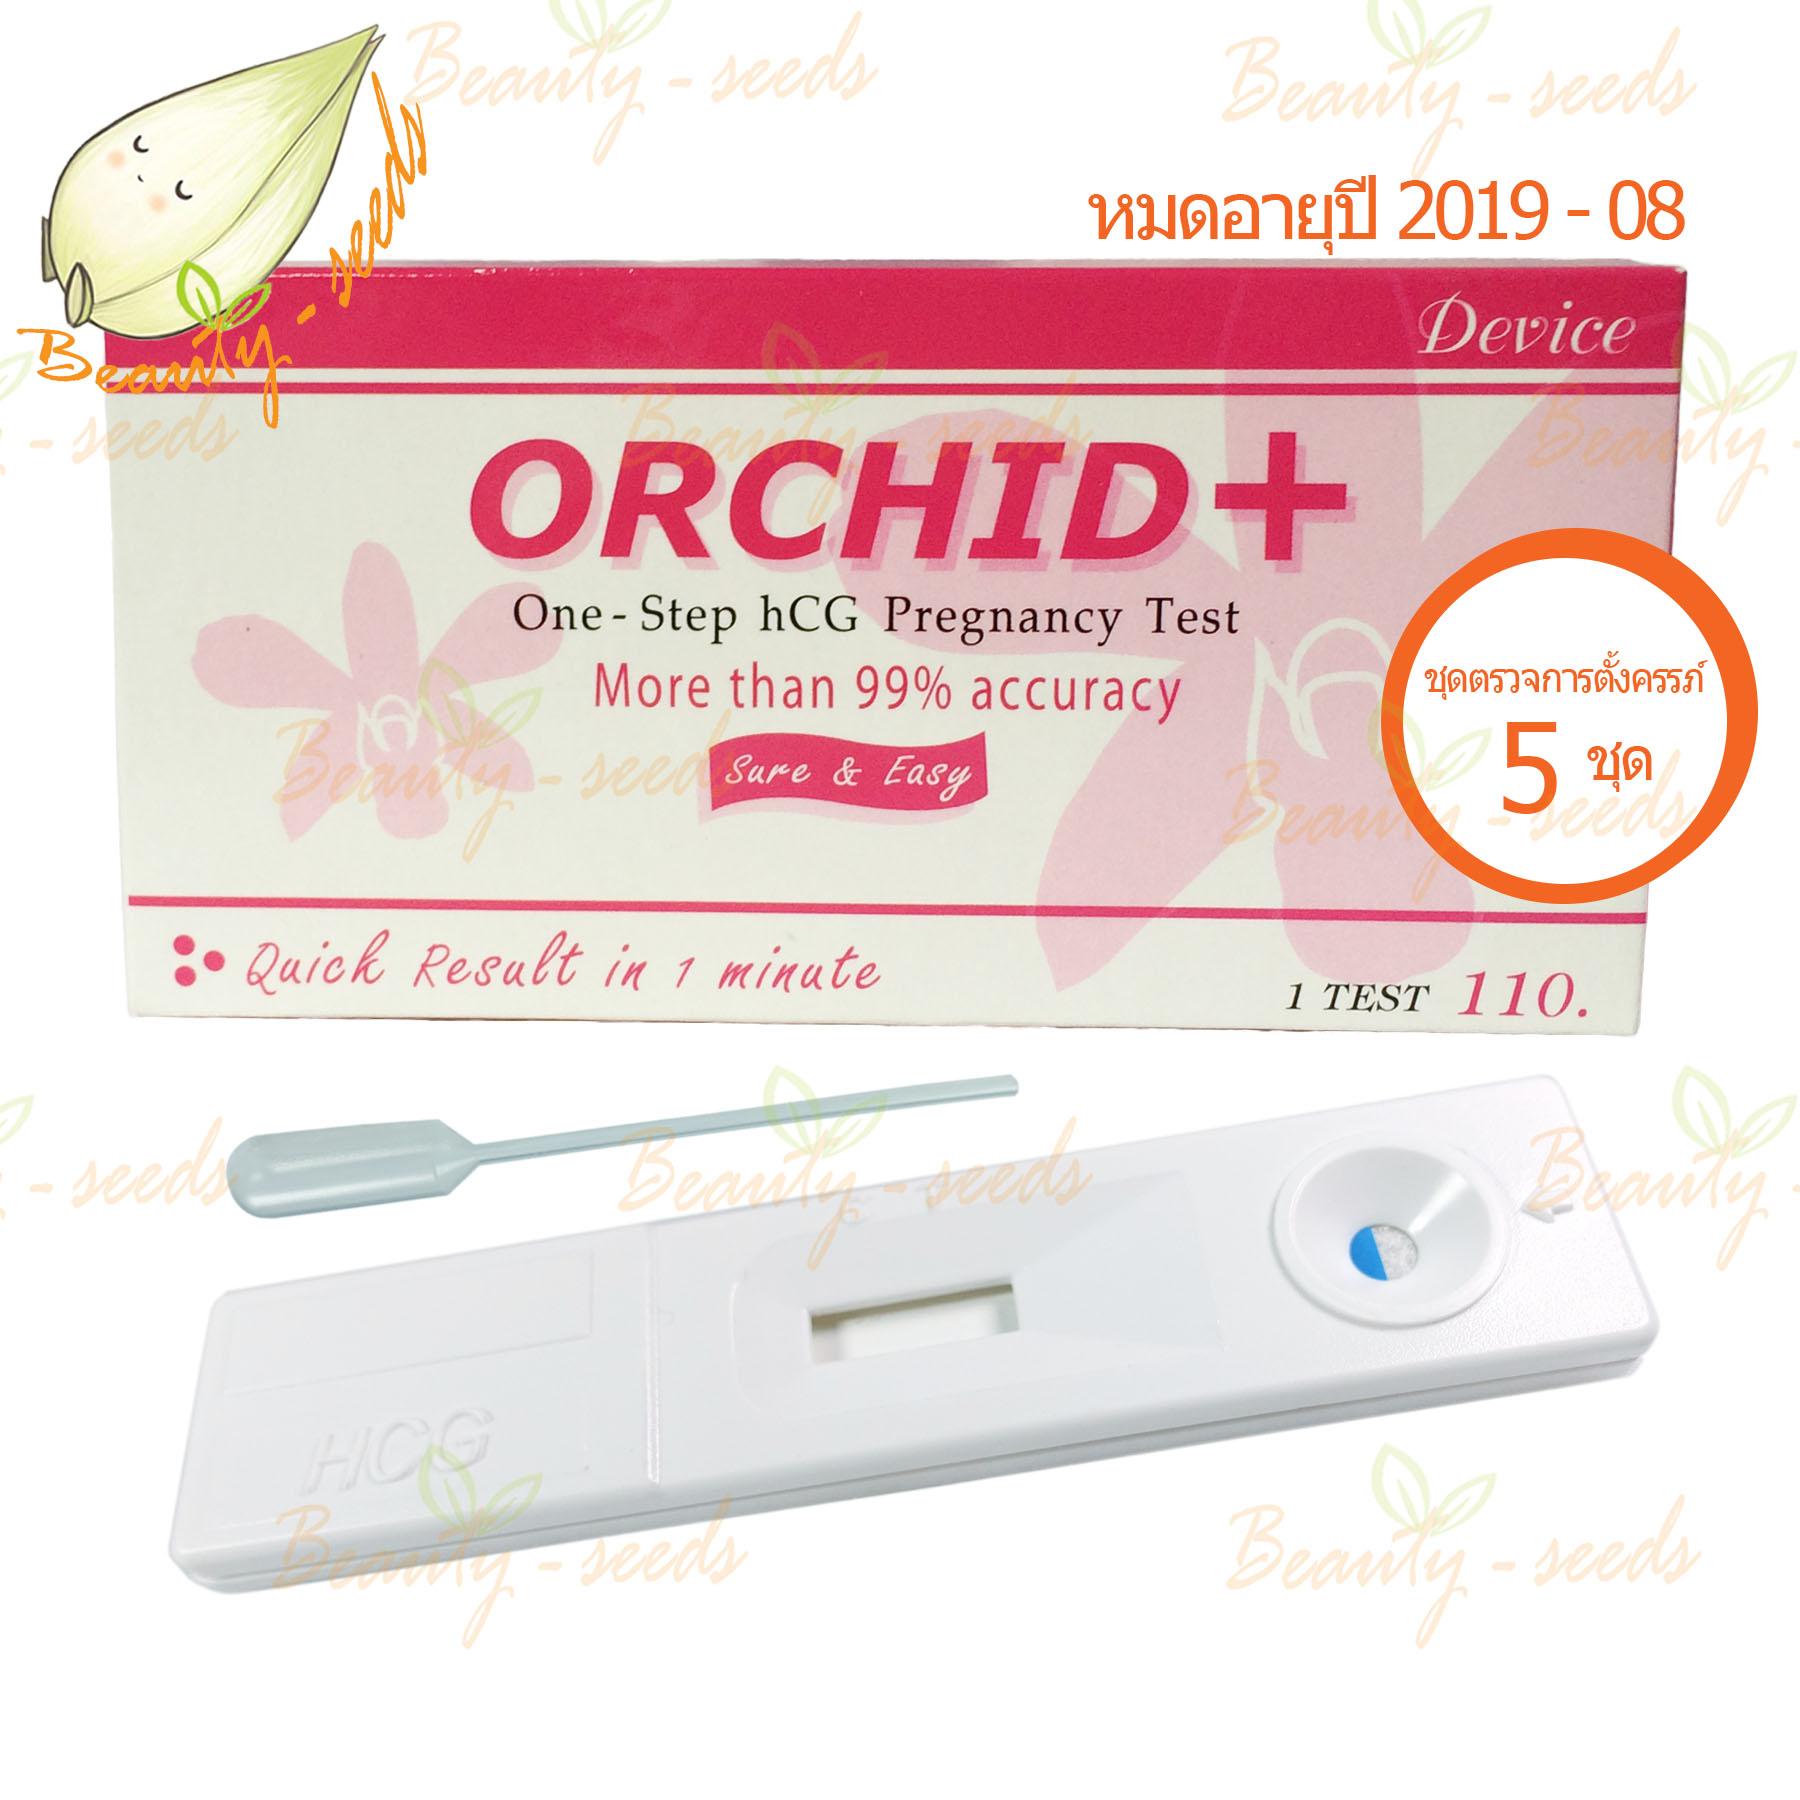  ชุดตรวจการตั้งครรภ์ แบบหยด 5 ชุด (Pink) Orchid + Pregnancy device test